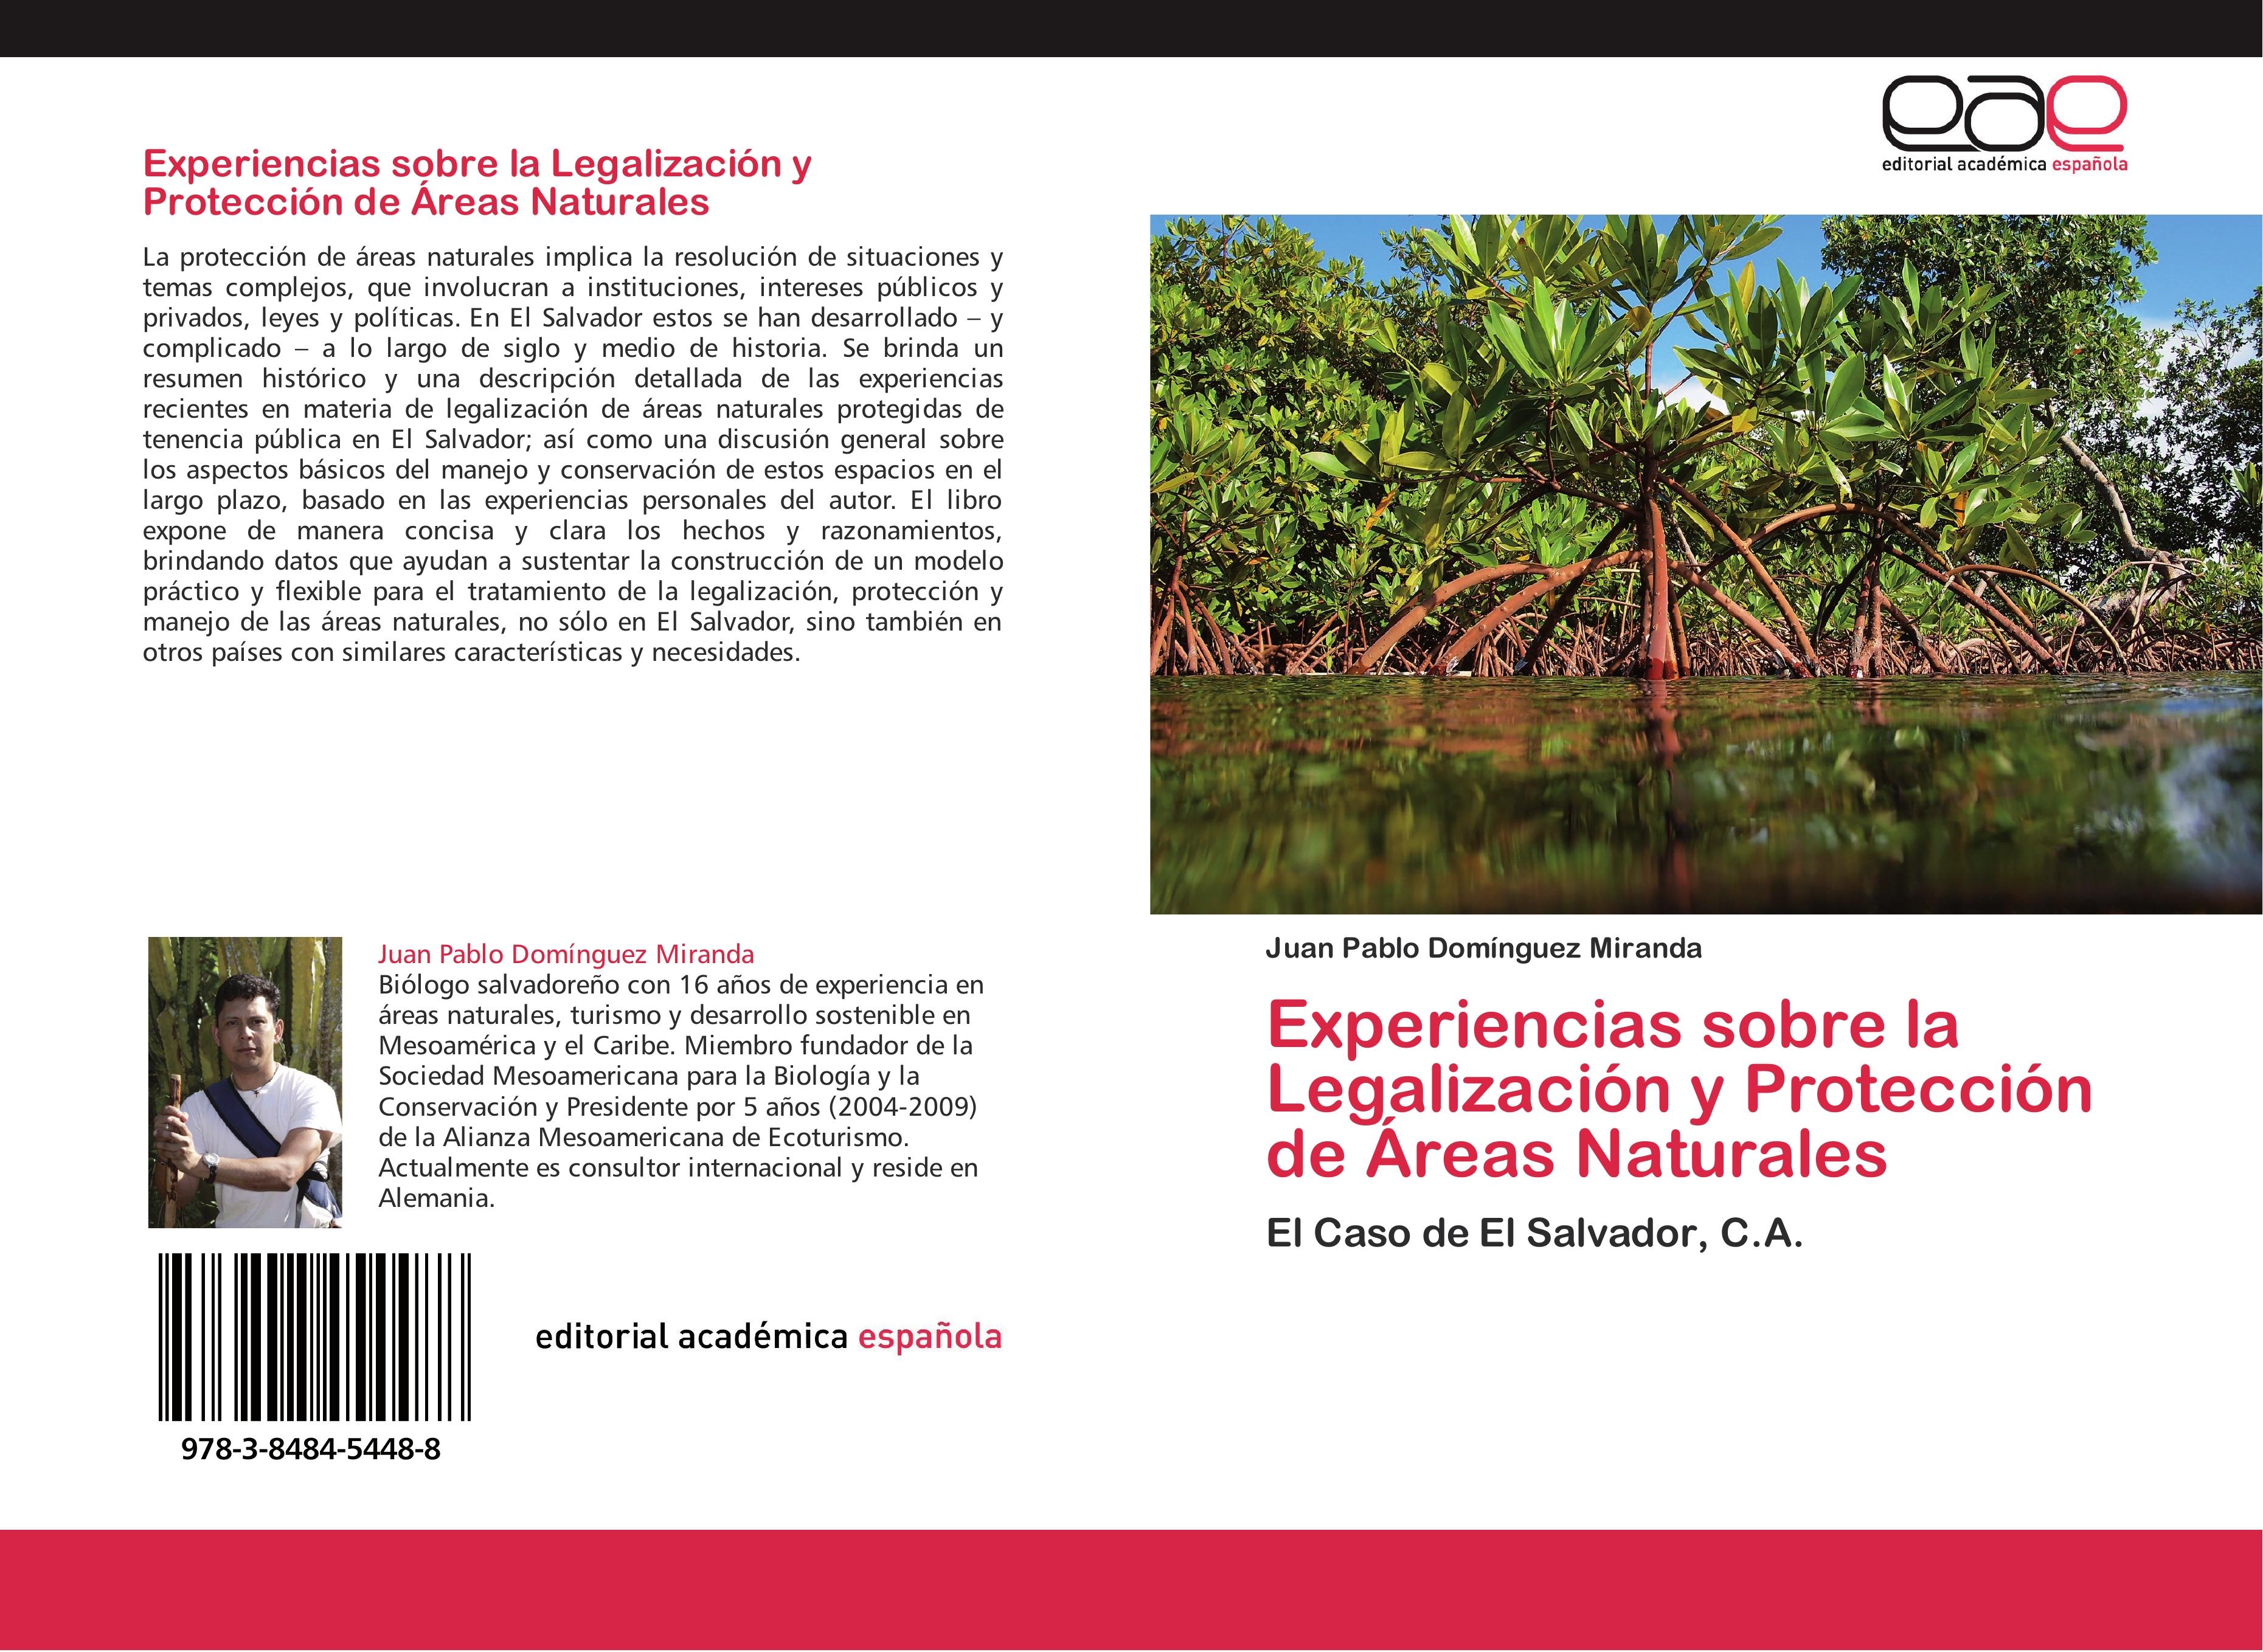 Experiencias sobre la Legalización y Protección de Áreas Naturales: El Caso de El Salvador, C.A.